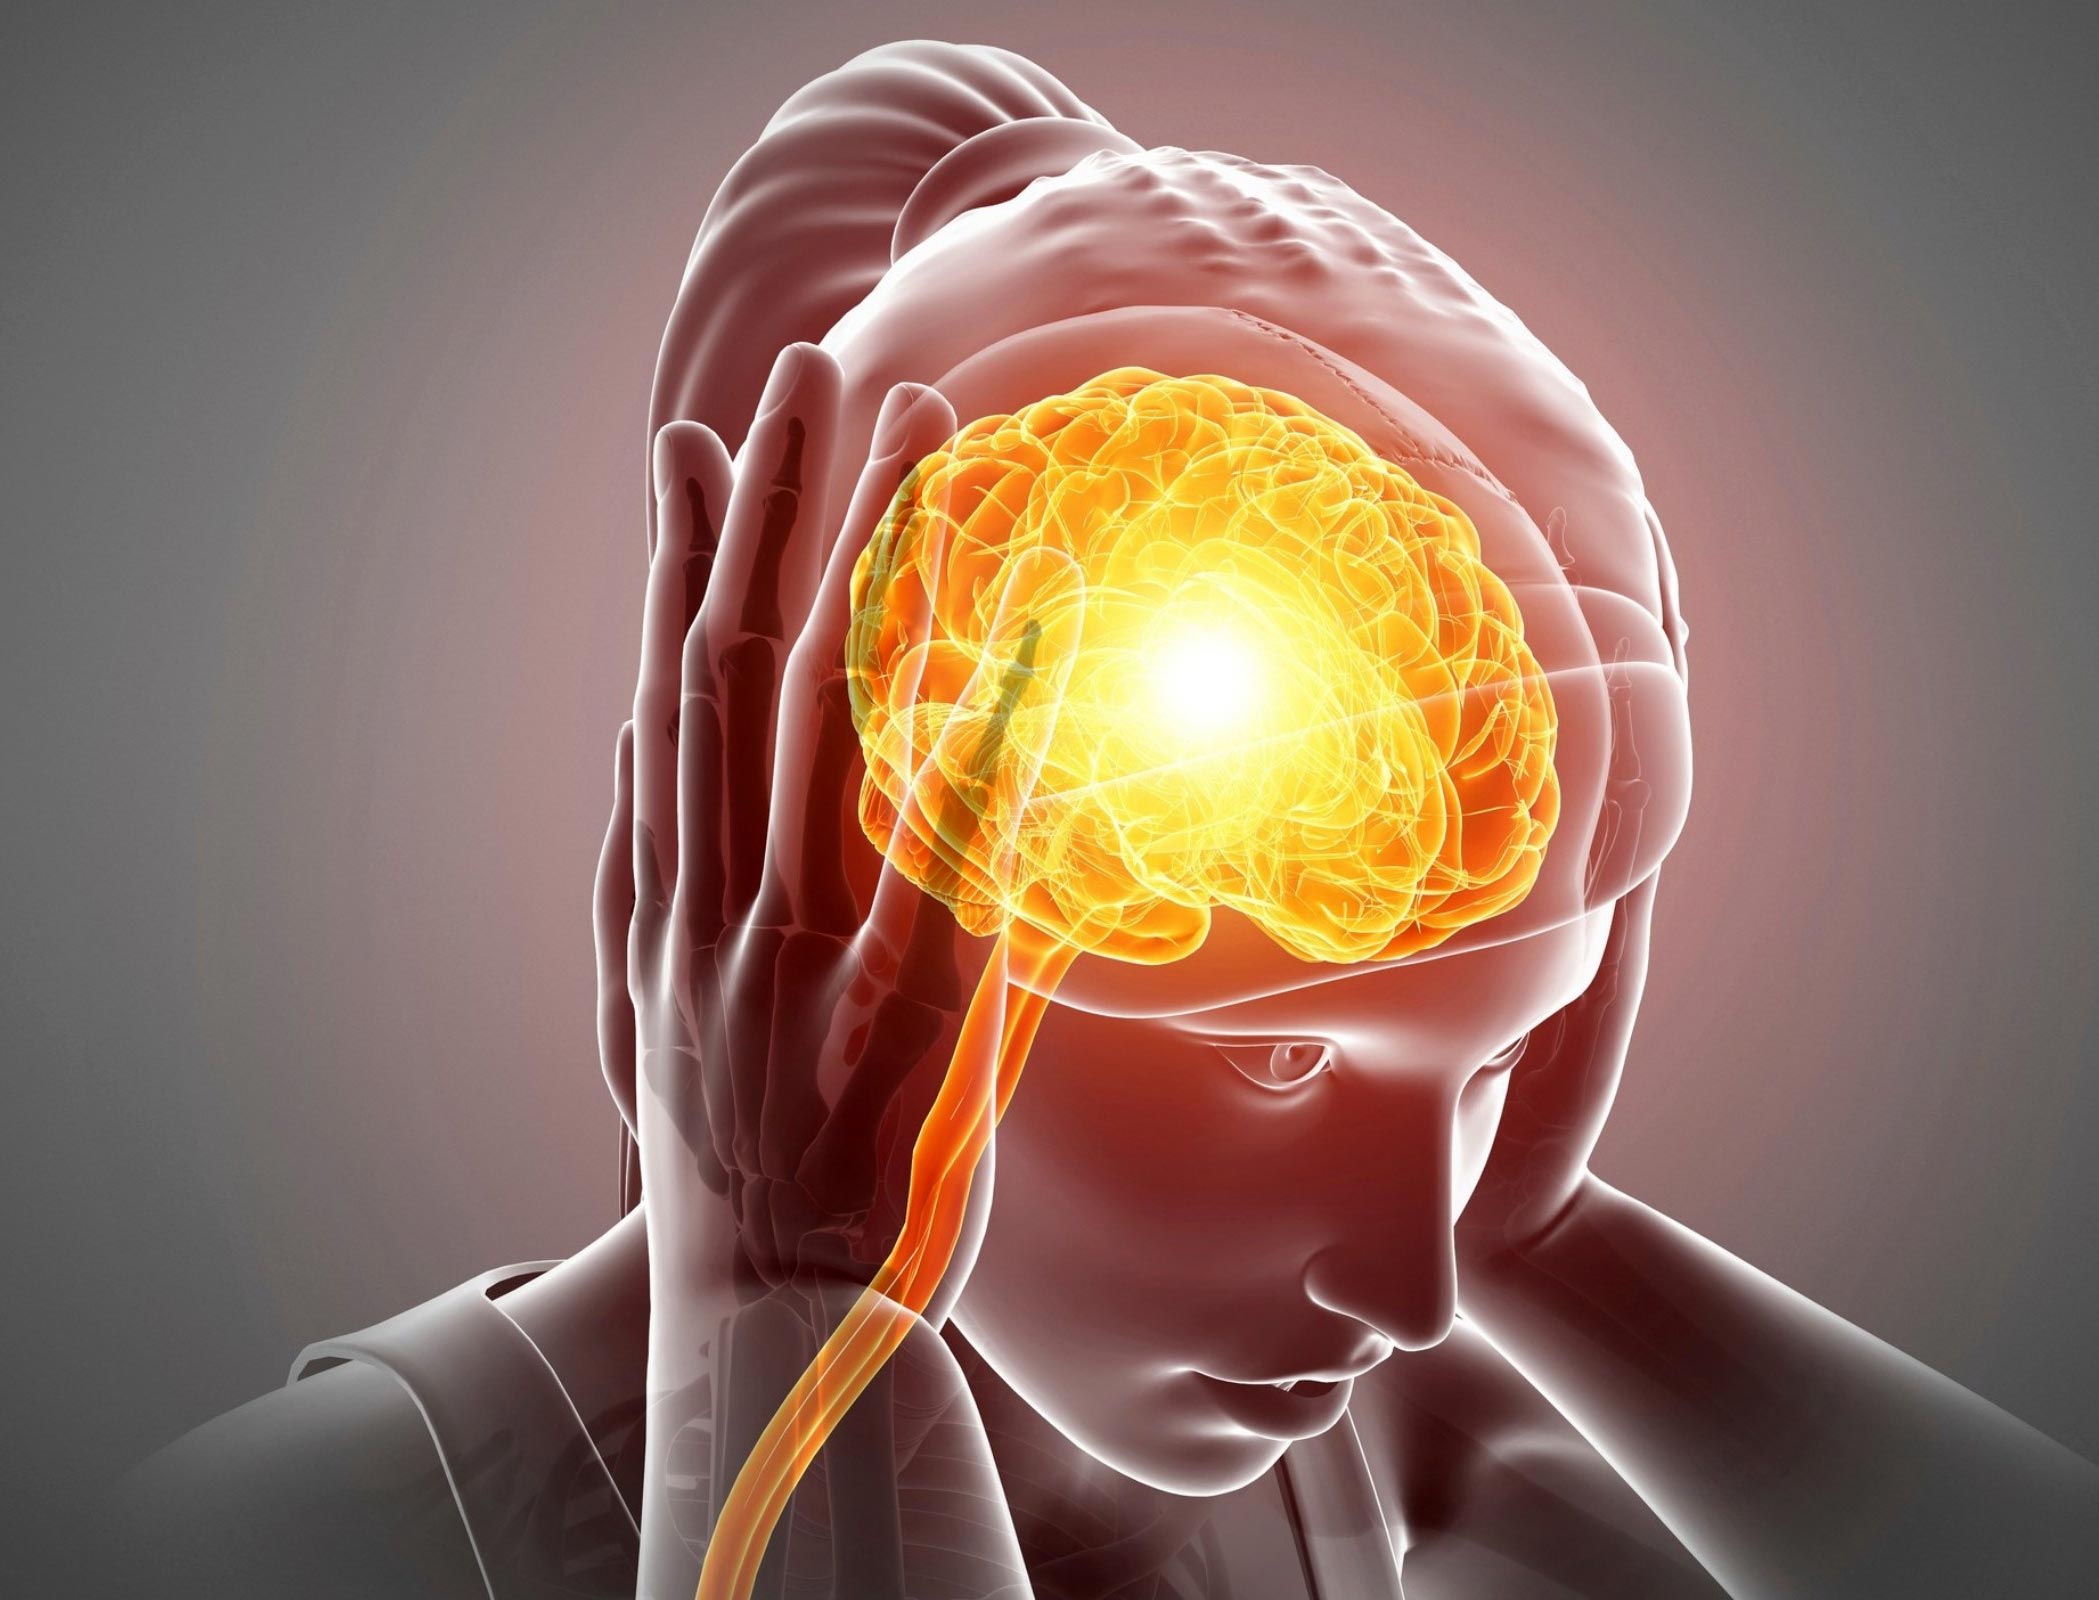 Co ma wspólnego ból głowy i migrena z zespołem jelita nadwrażliwego?